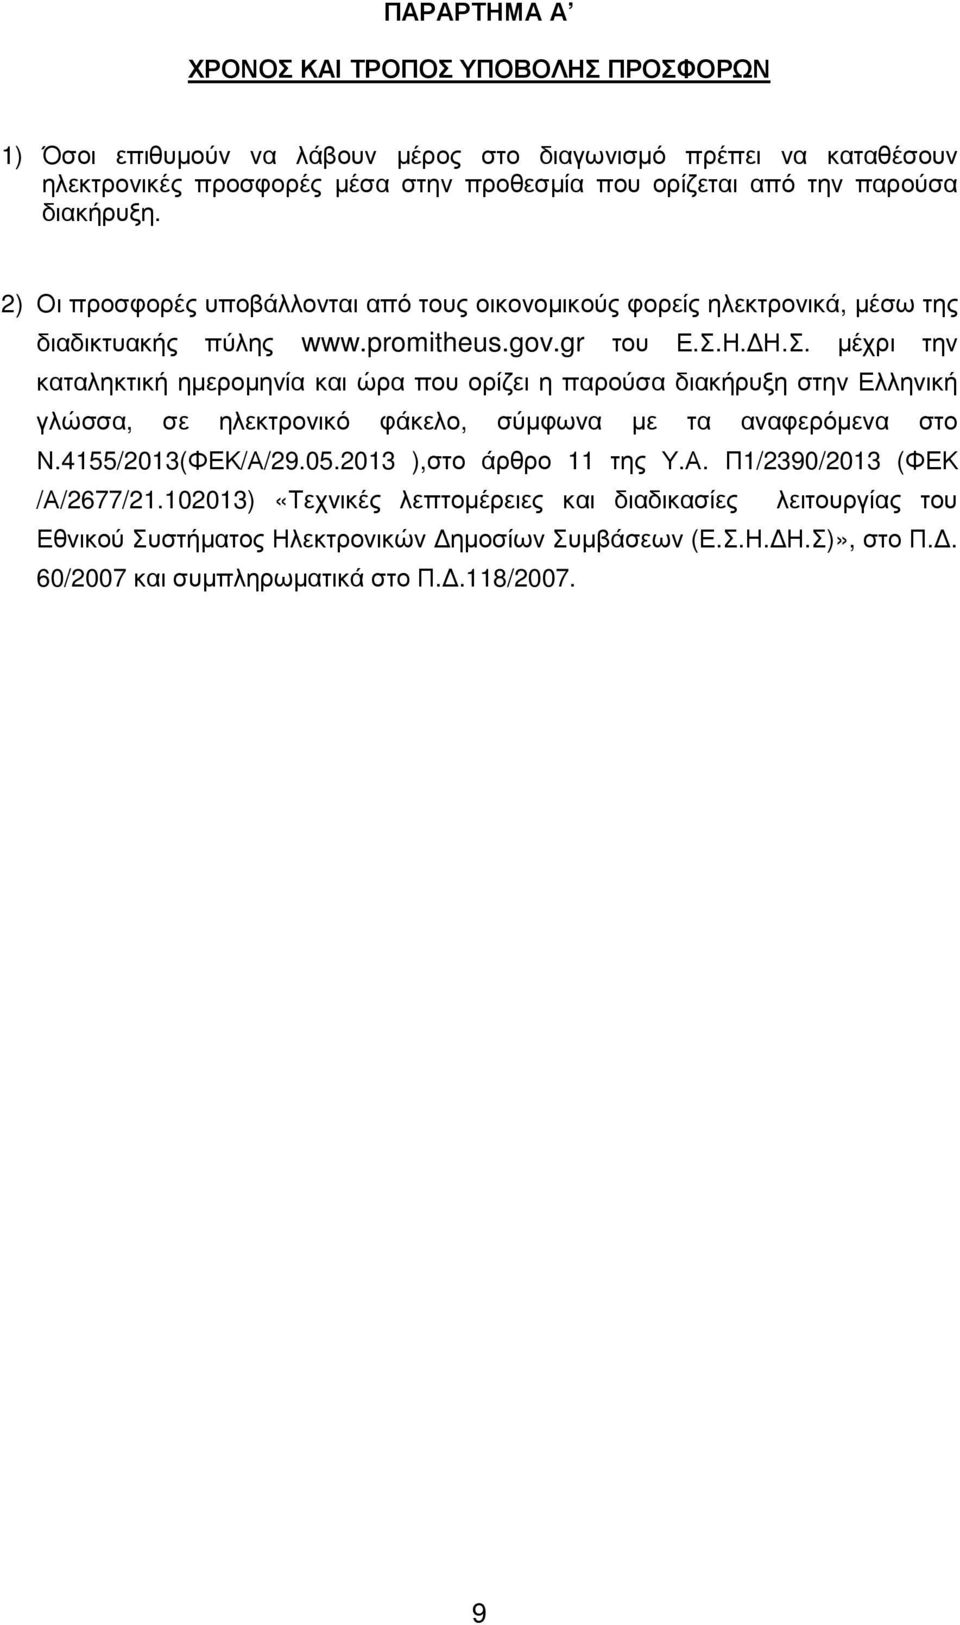 Η. Η.Σ. µέχρι την καταληκτική ηµεροµηνία και ώρα που ορίζει η παρούσα διακήρυξη στην Ελληνική γλώσσα, σε ηλεκτρονικό φάκελο, σύµφωνα µε τα αναφερόµενα στο Ν.4155/2013(ΦΕΚ/Α/29.05.